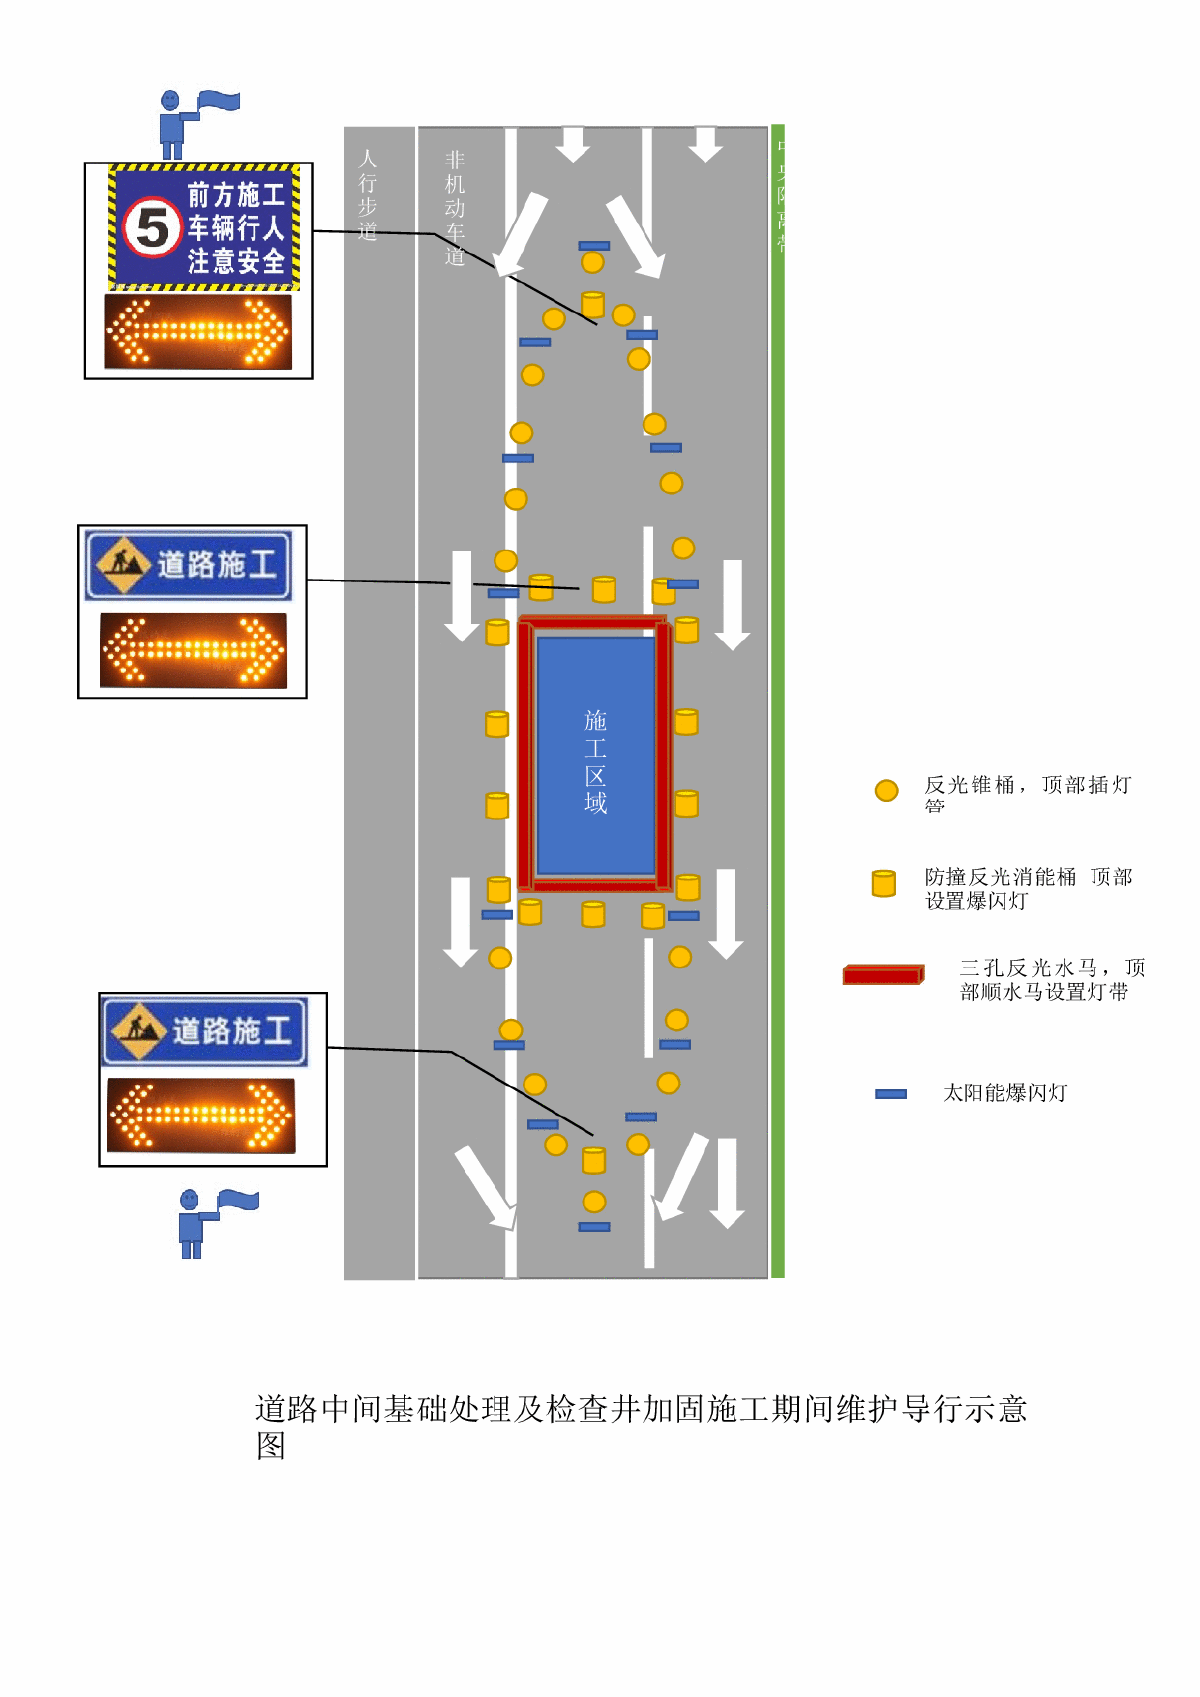 道路交通导行示意图(附件为部分截图)